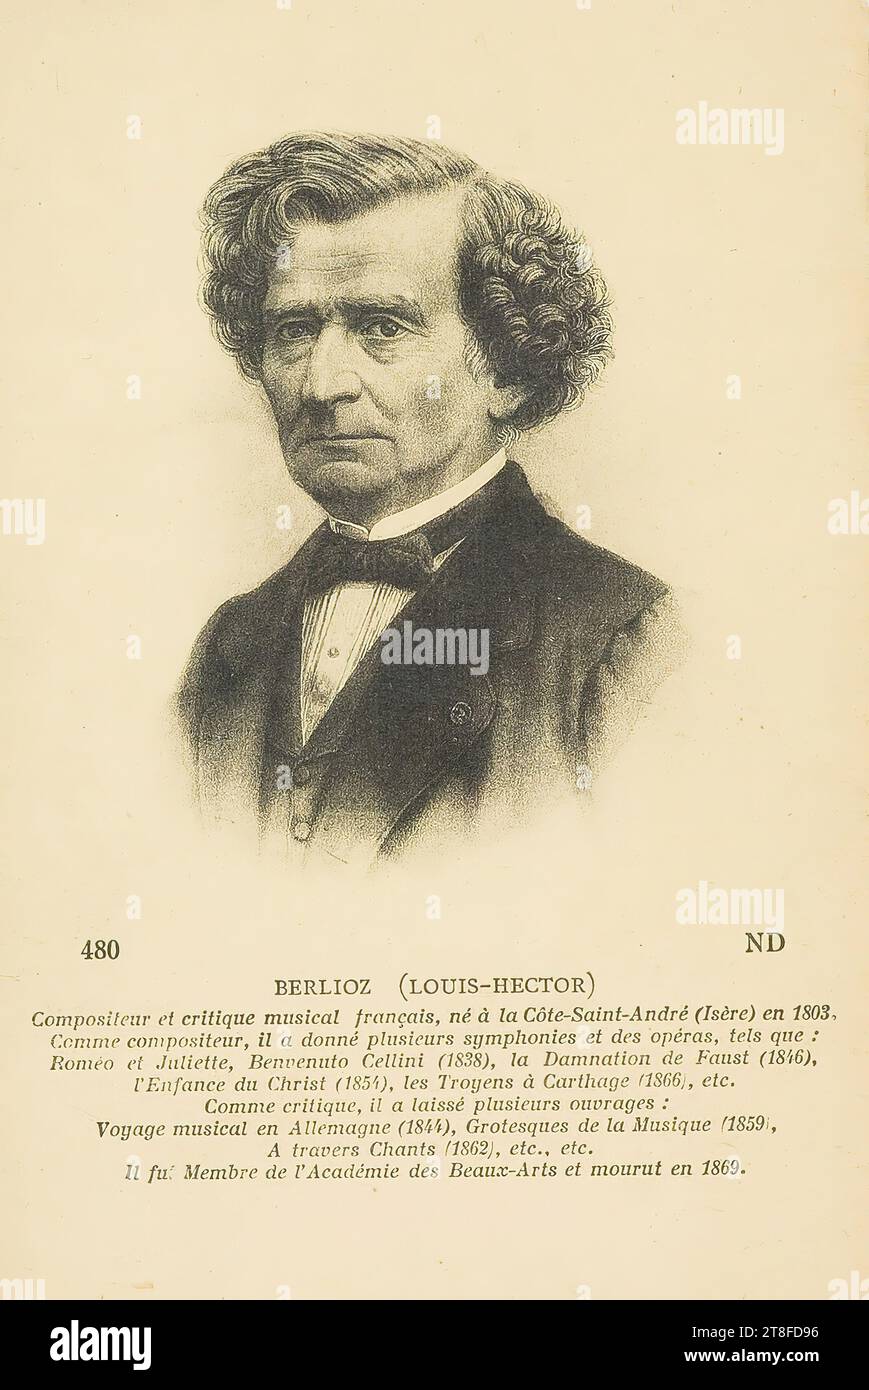 Cartolina dai Musei reali di Arte e storia - Brux.: Serie B.P.223. 480. N/A.. BERLIOZ (LOUIS-HECTOR), compositore francese e circo musicale, nato a Côte-Saint-André (Isère) nel 1803. Come compositore, ha dato diverse sinfonie e opere, come: Roméo et Juliette, benvenuto Cellini (1838), The Damnation of Faust (1846), The Childhood of Christ (1854), The Trojans in Carthage (1806), ecc., come critico, ha lasciato diverse opere: musical Journey in Germany (1844), Grotesque Music (1859), Through Songs (1862) ecc.. Foto Stock